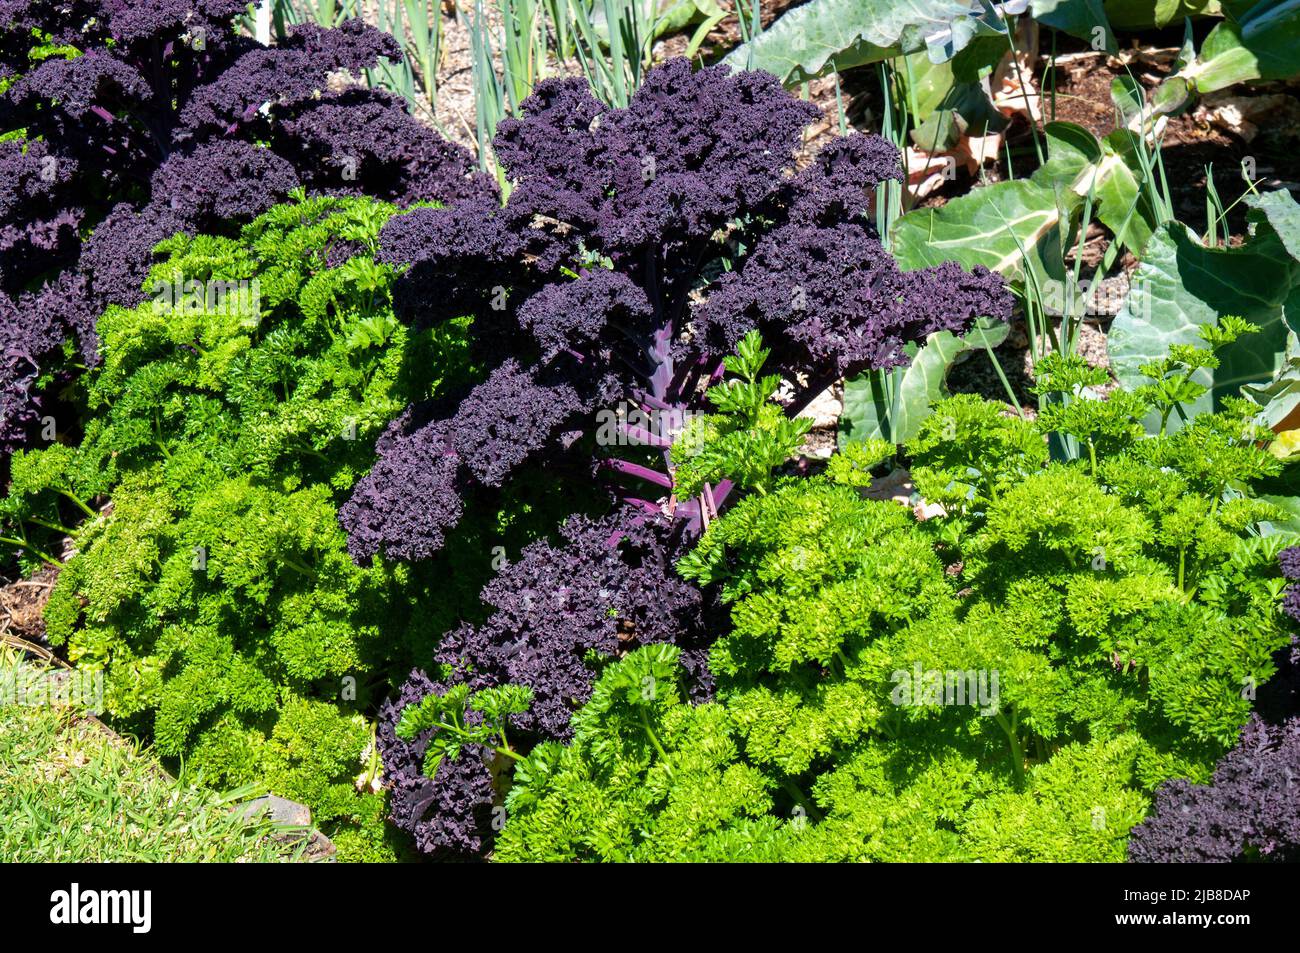 Sydney Australien, Rotkohl und Petersilie als Gartengrenze gepflanzt Stockfoto